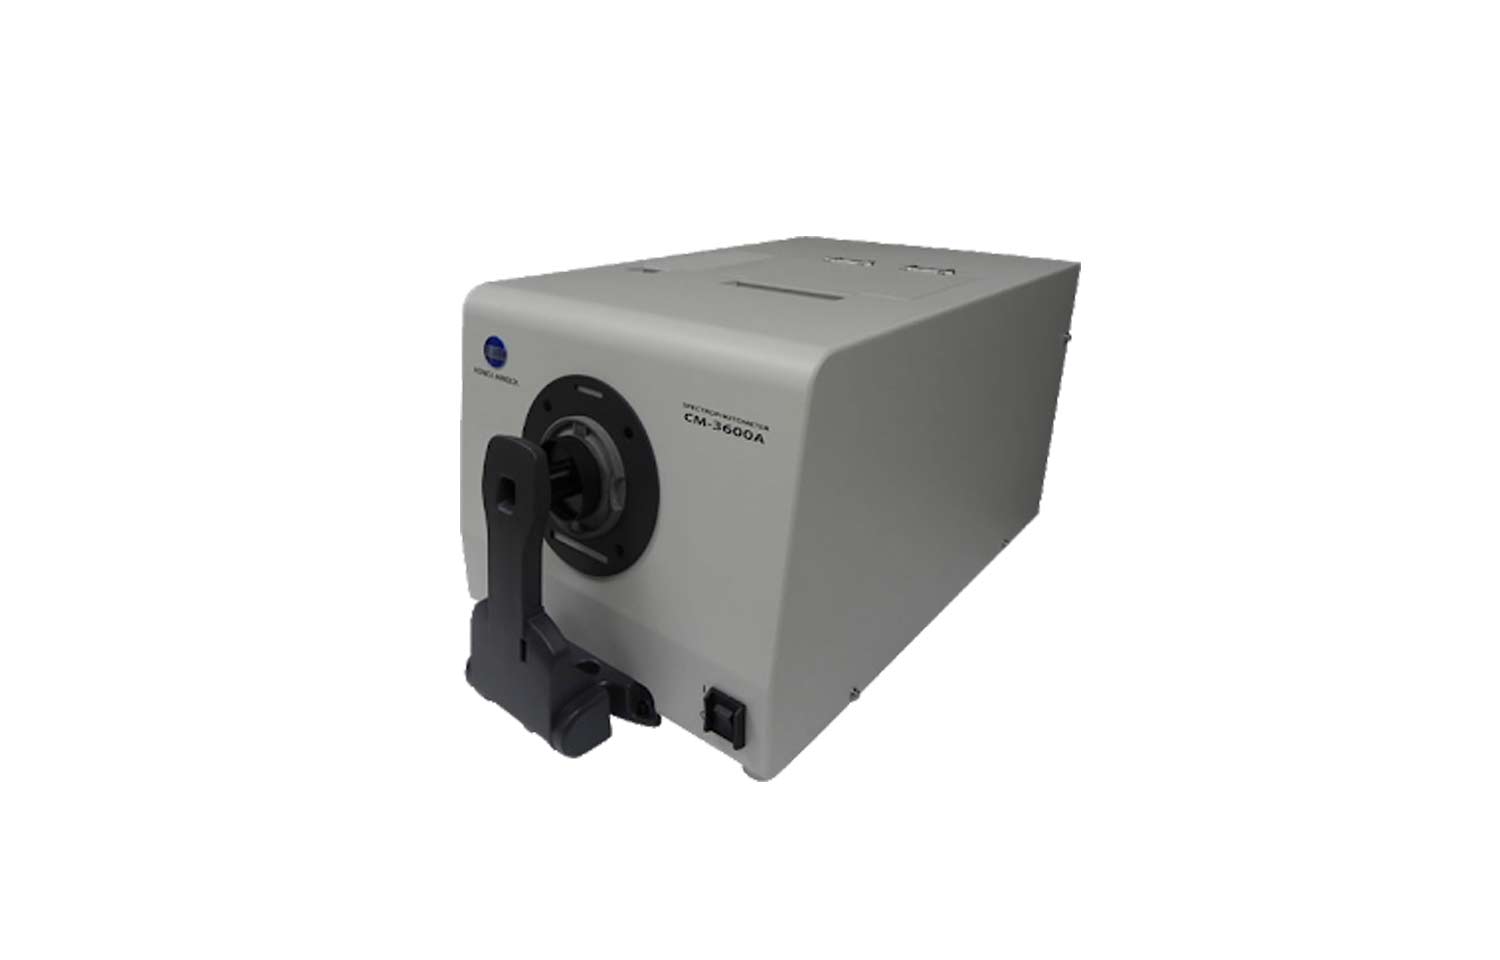 Espectrofotômetro de Bancada CM-3600A